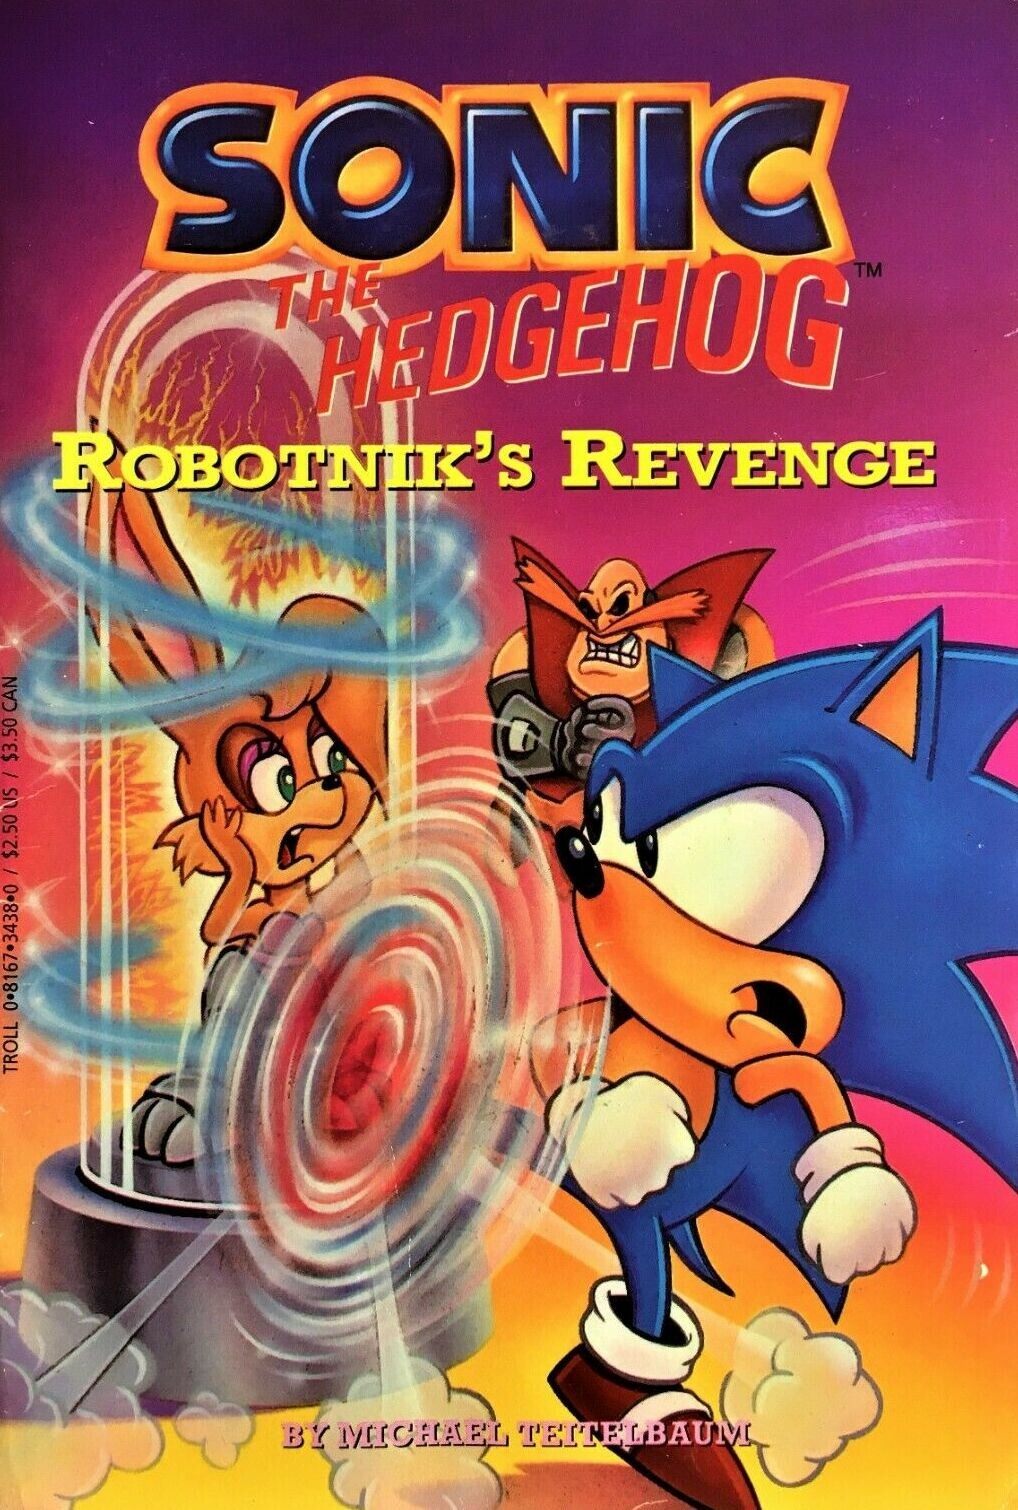 More information about "Sonic the Hedgehog: Robotnik's Revenge"